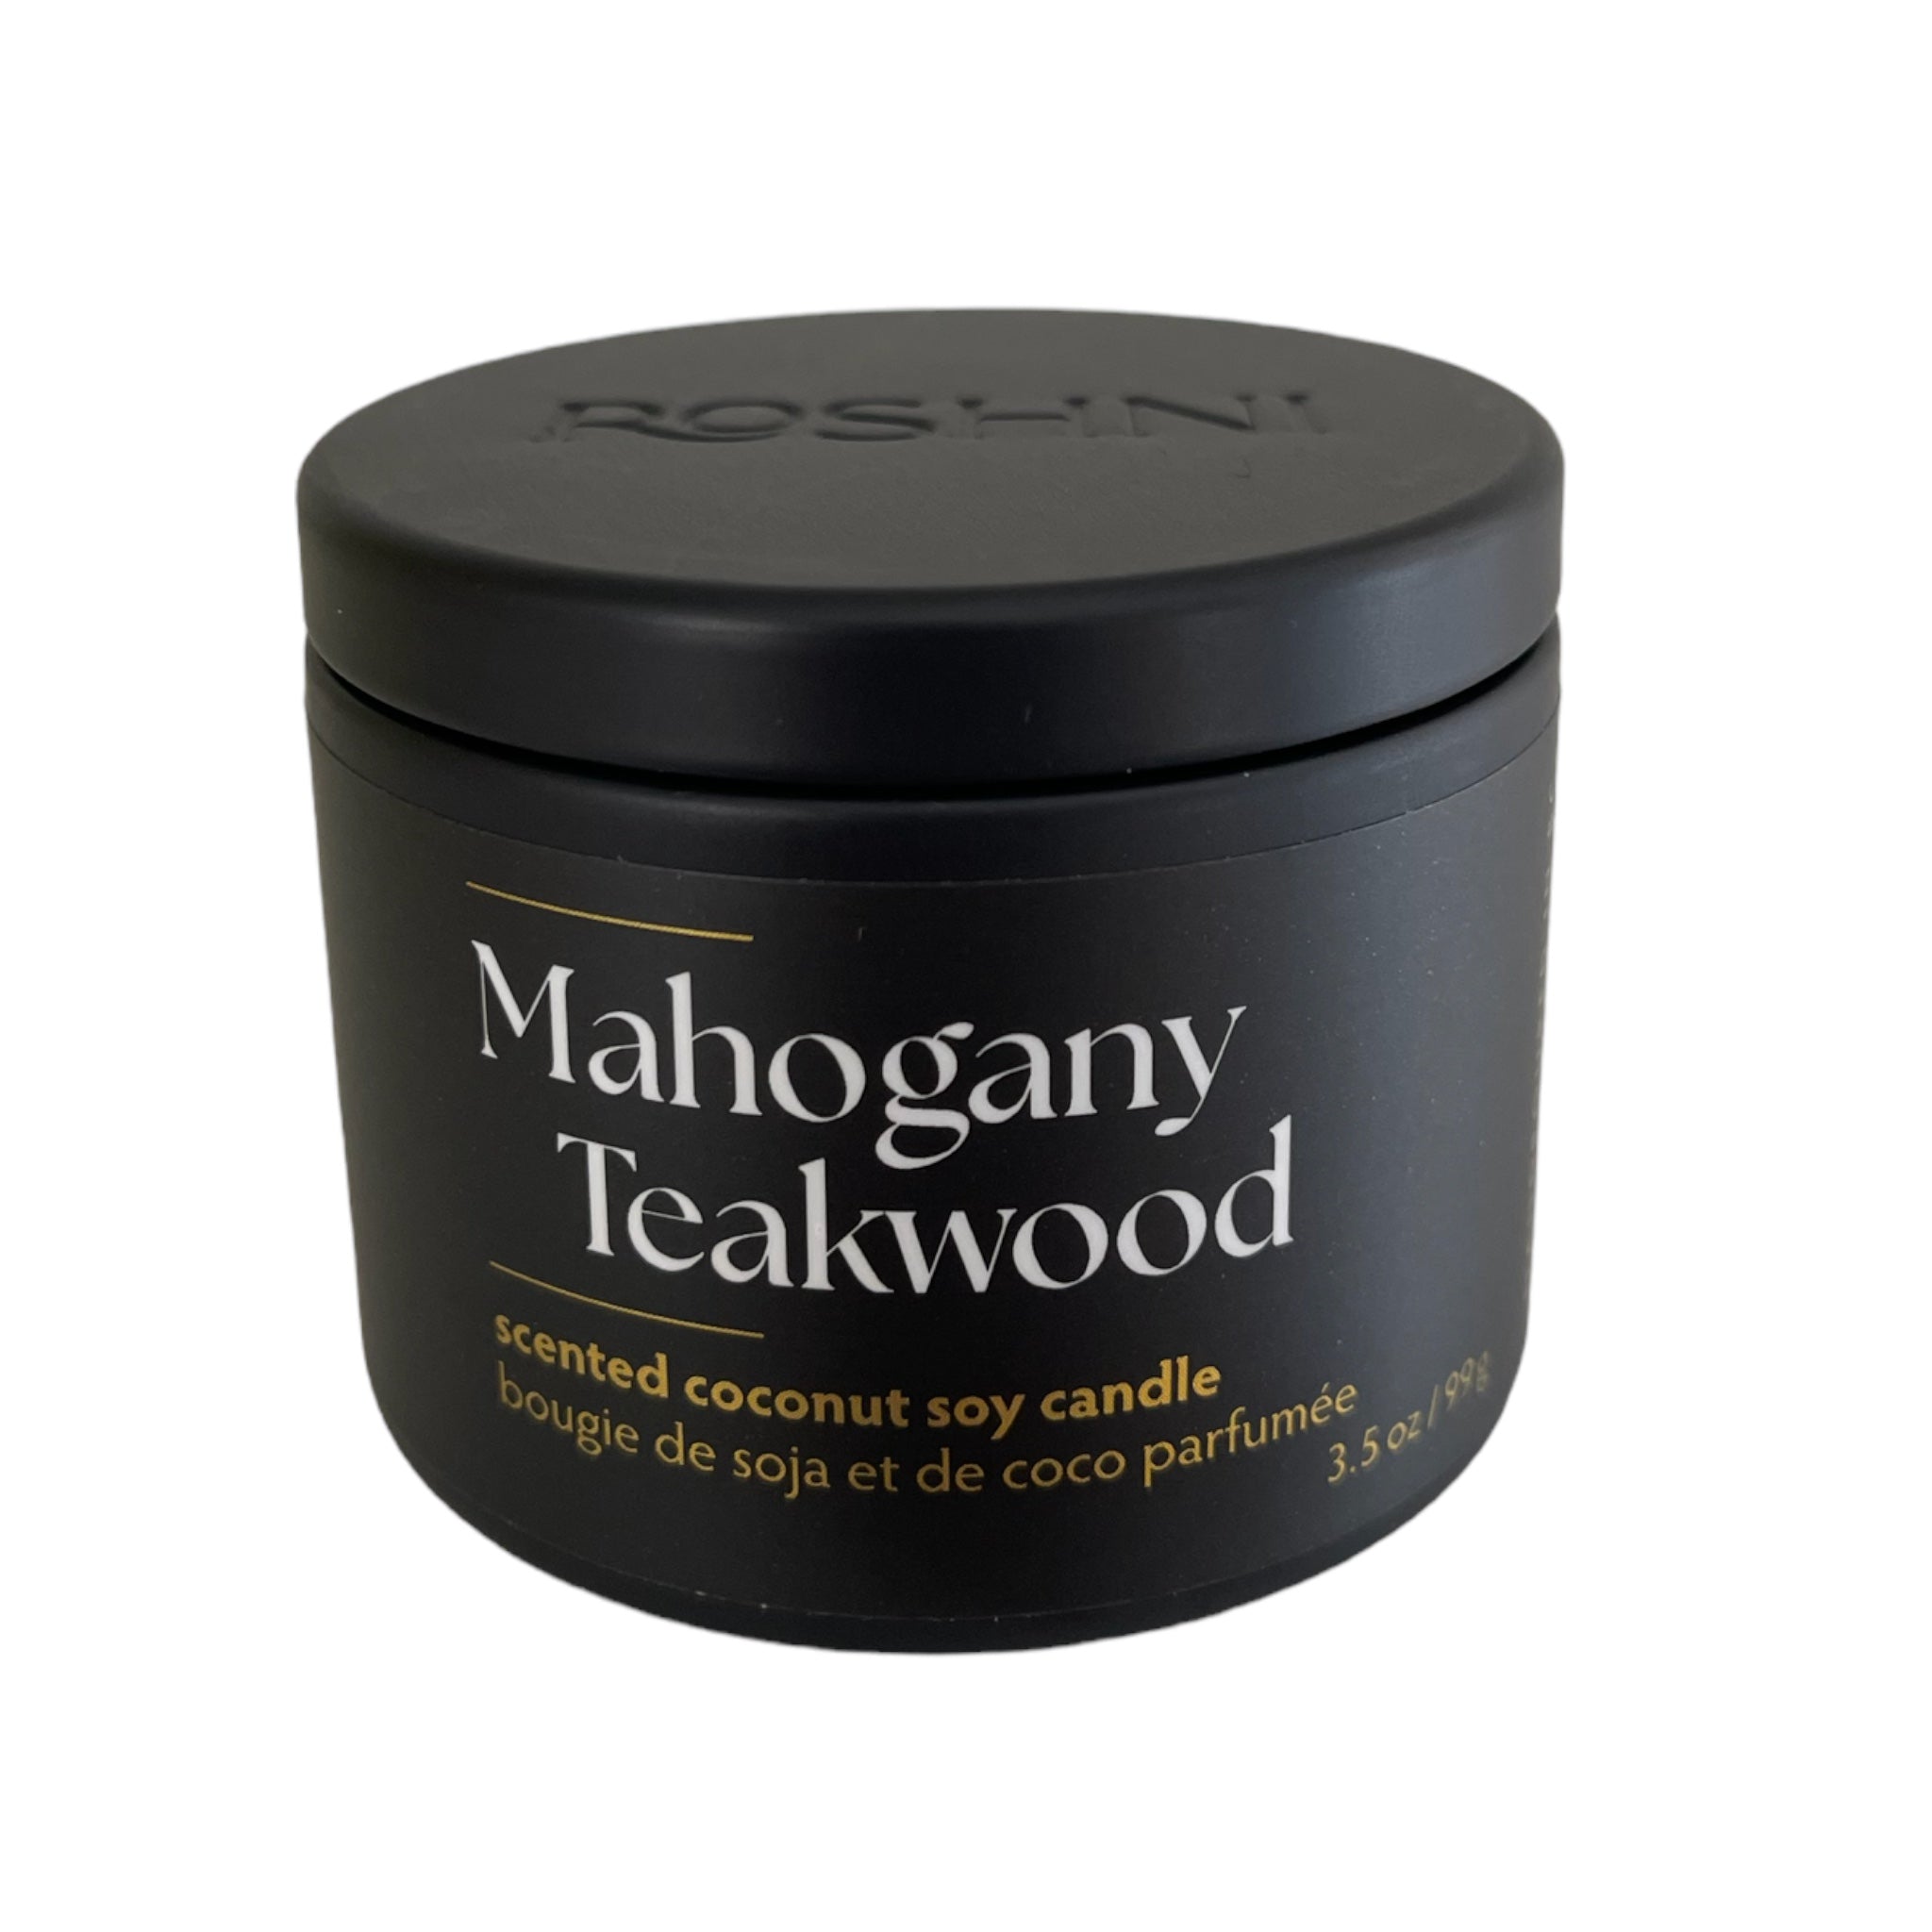 Mahogany Teakwood – Roshni Wellness